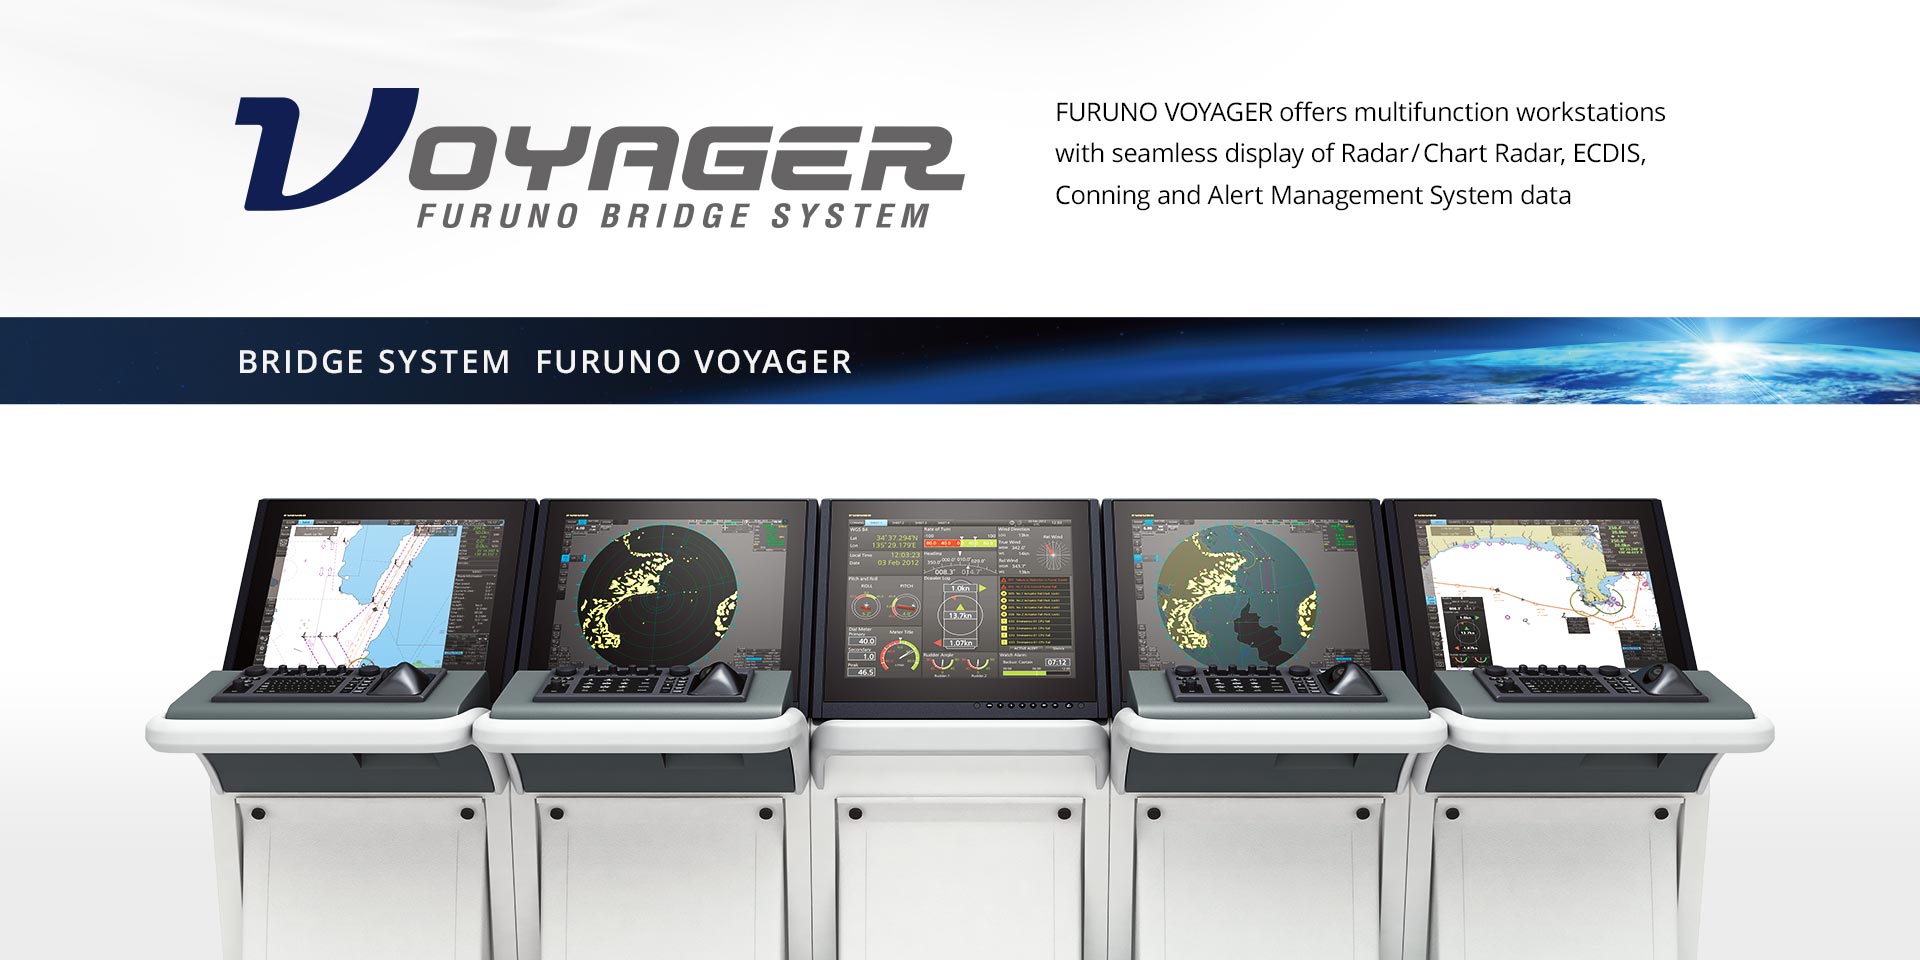 FURUNO VOYAGER, the next-generation bridge system